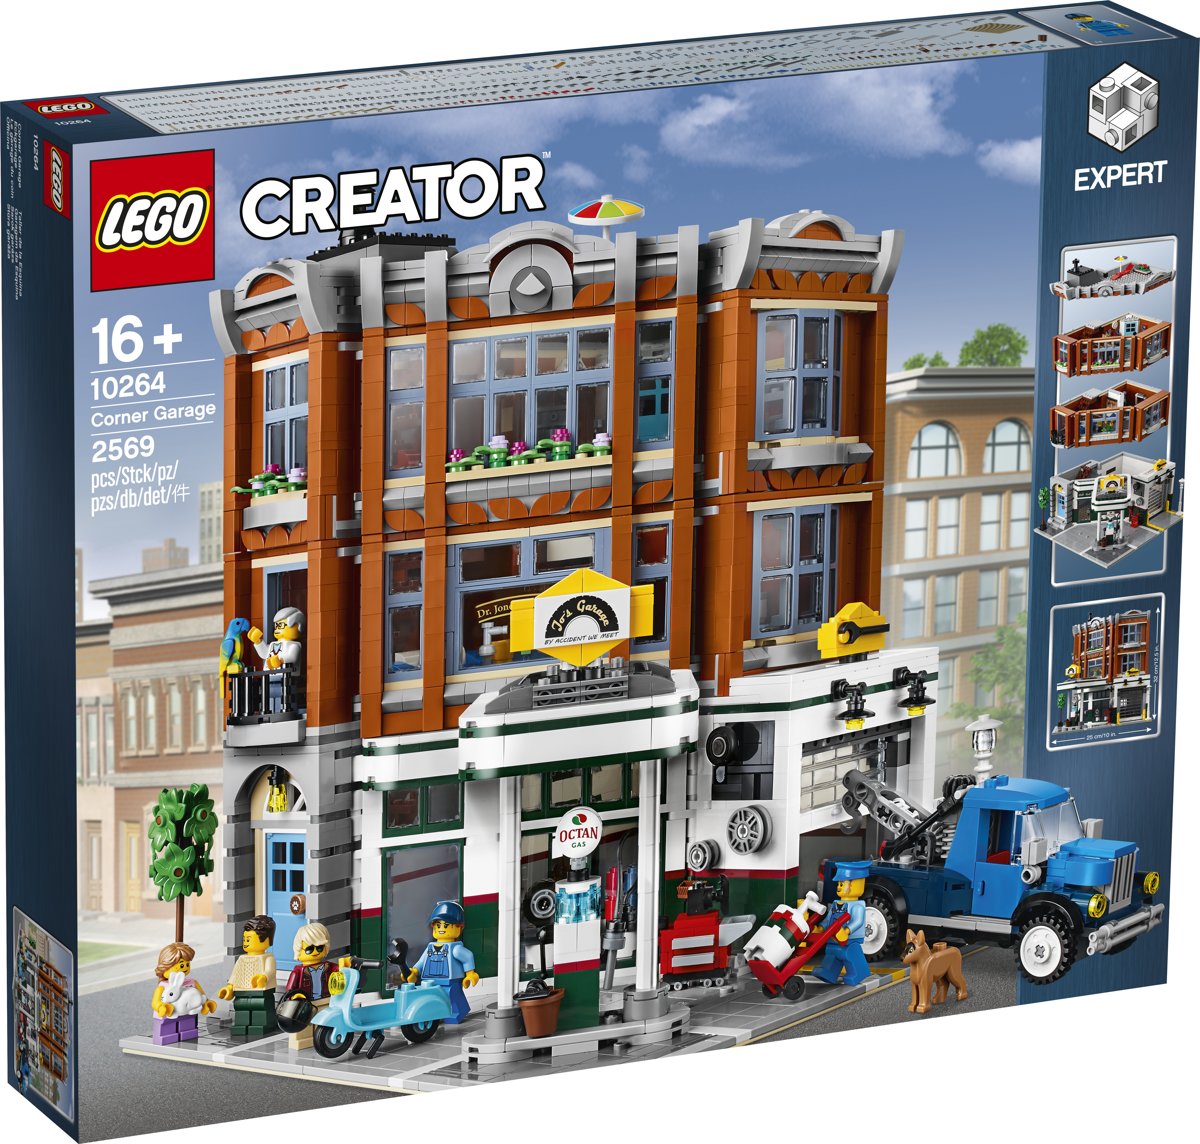 LEGO Creator Expert Le garage du coin - 10264